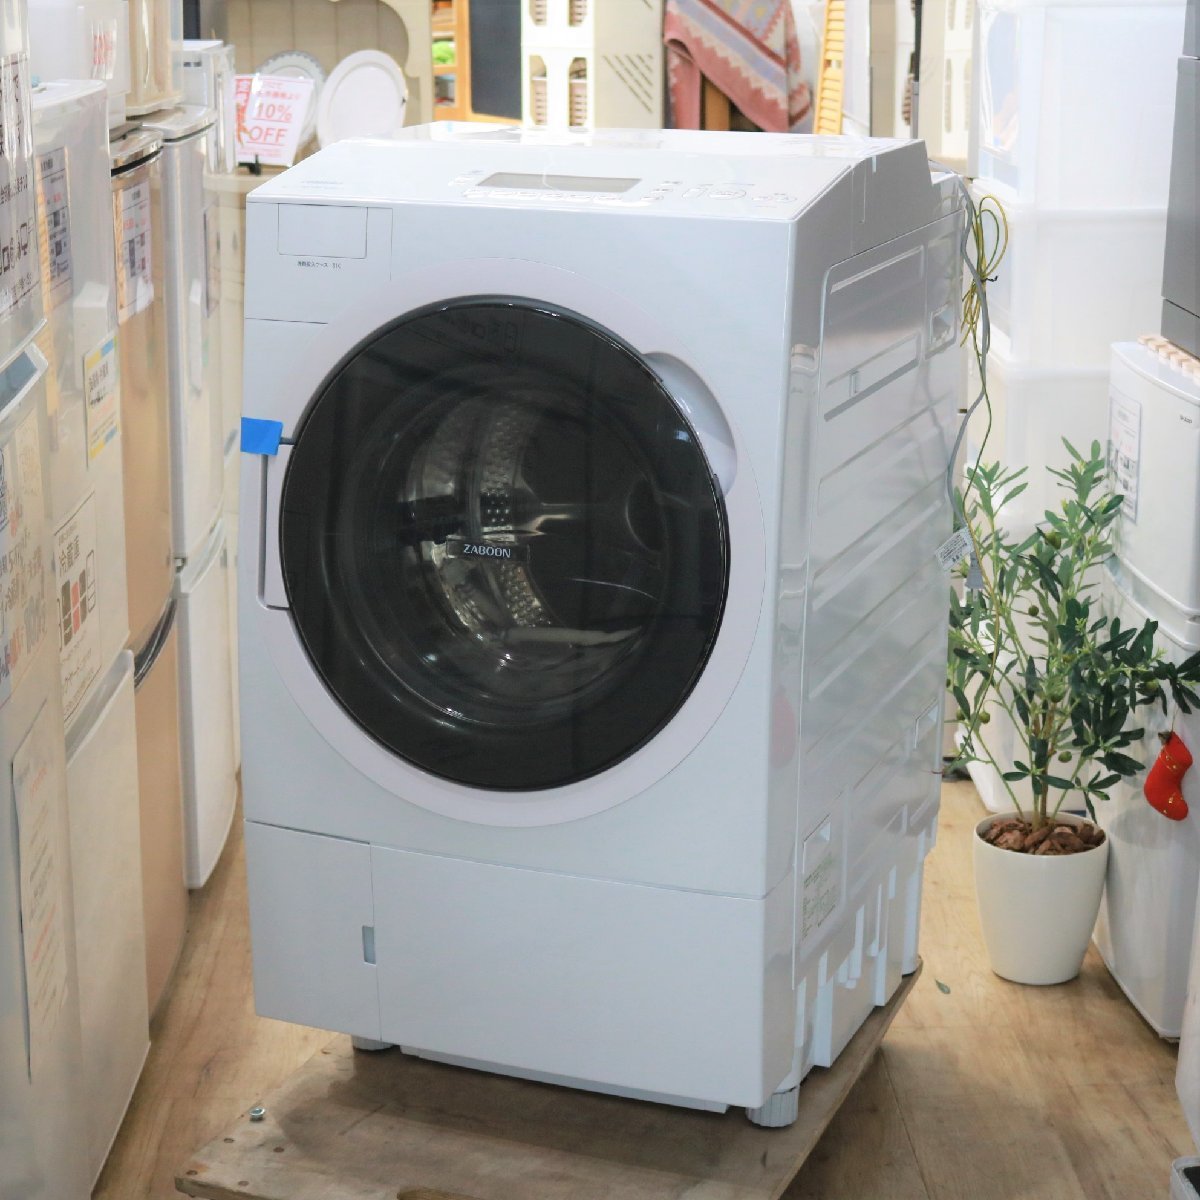 東京都渋谷区にて 東芝 ドラム式洗濯乾燥機 TW-117V9L 2021年製 を出張買取させて頂きました。